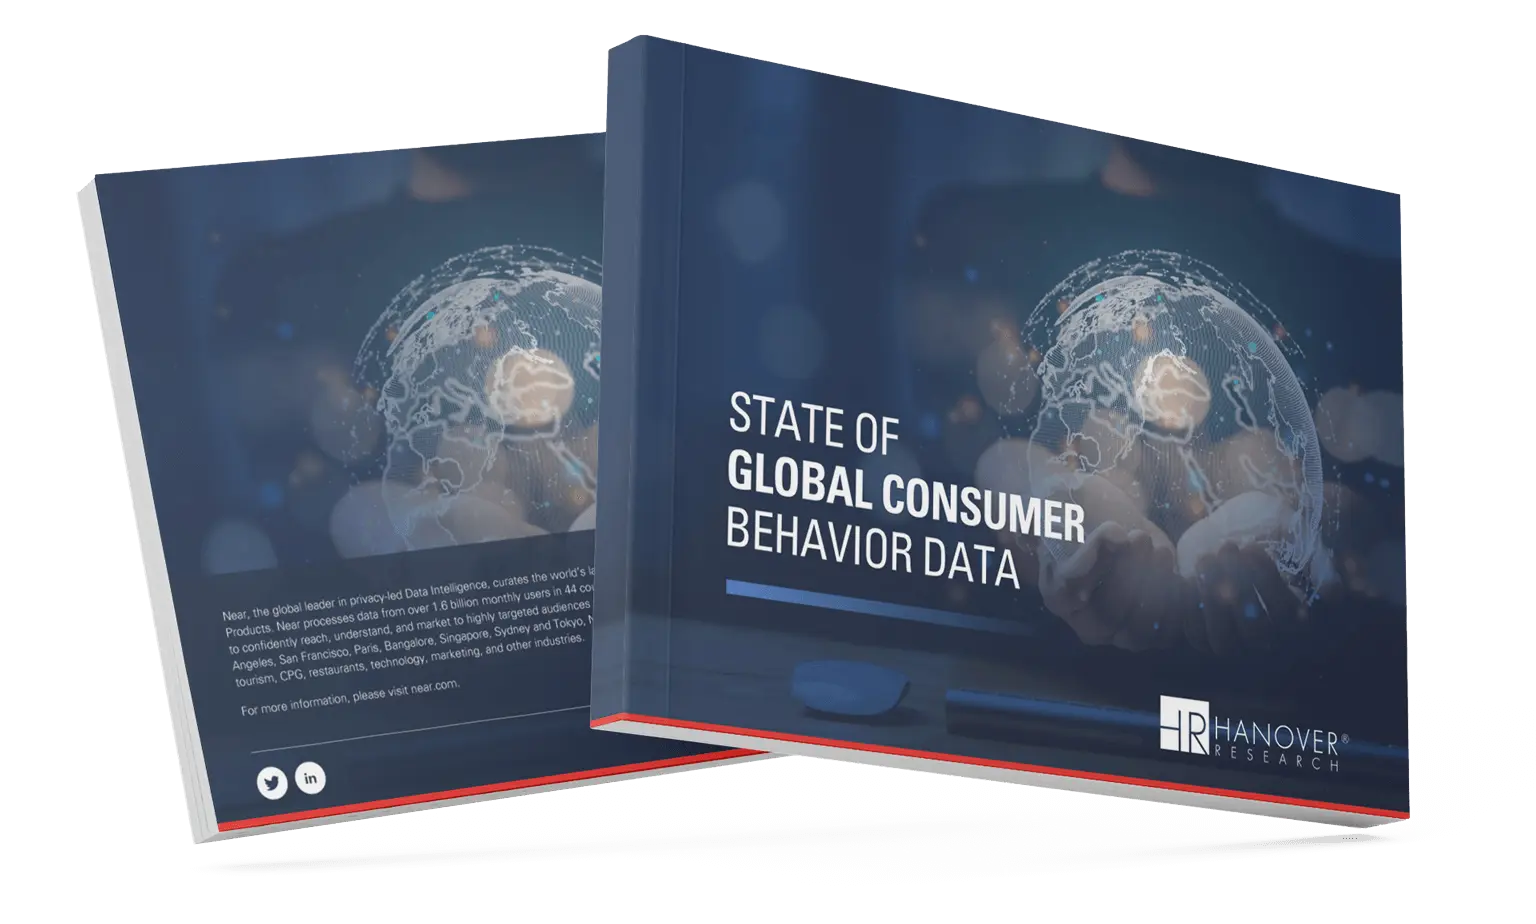 state-of-global-consumer-behavior-data